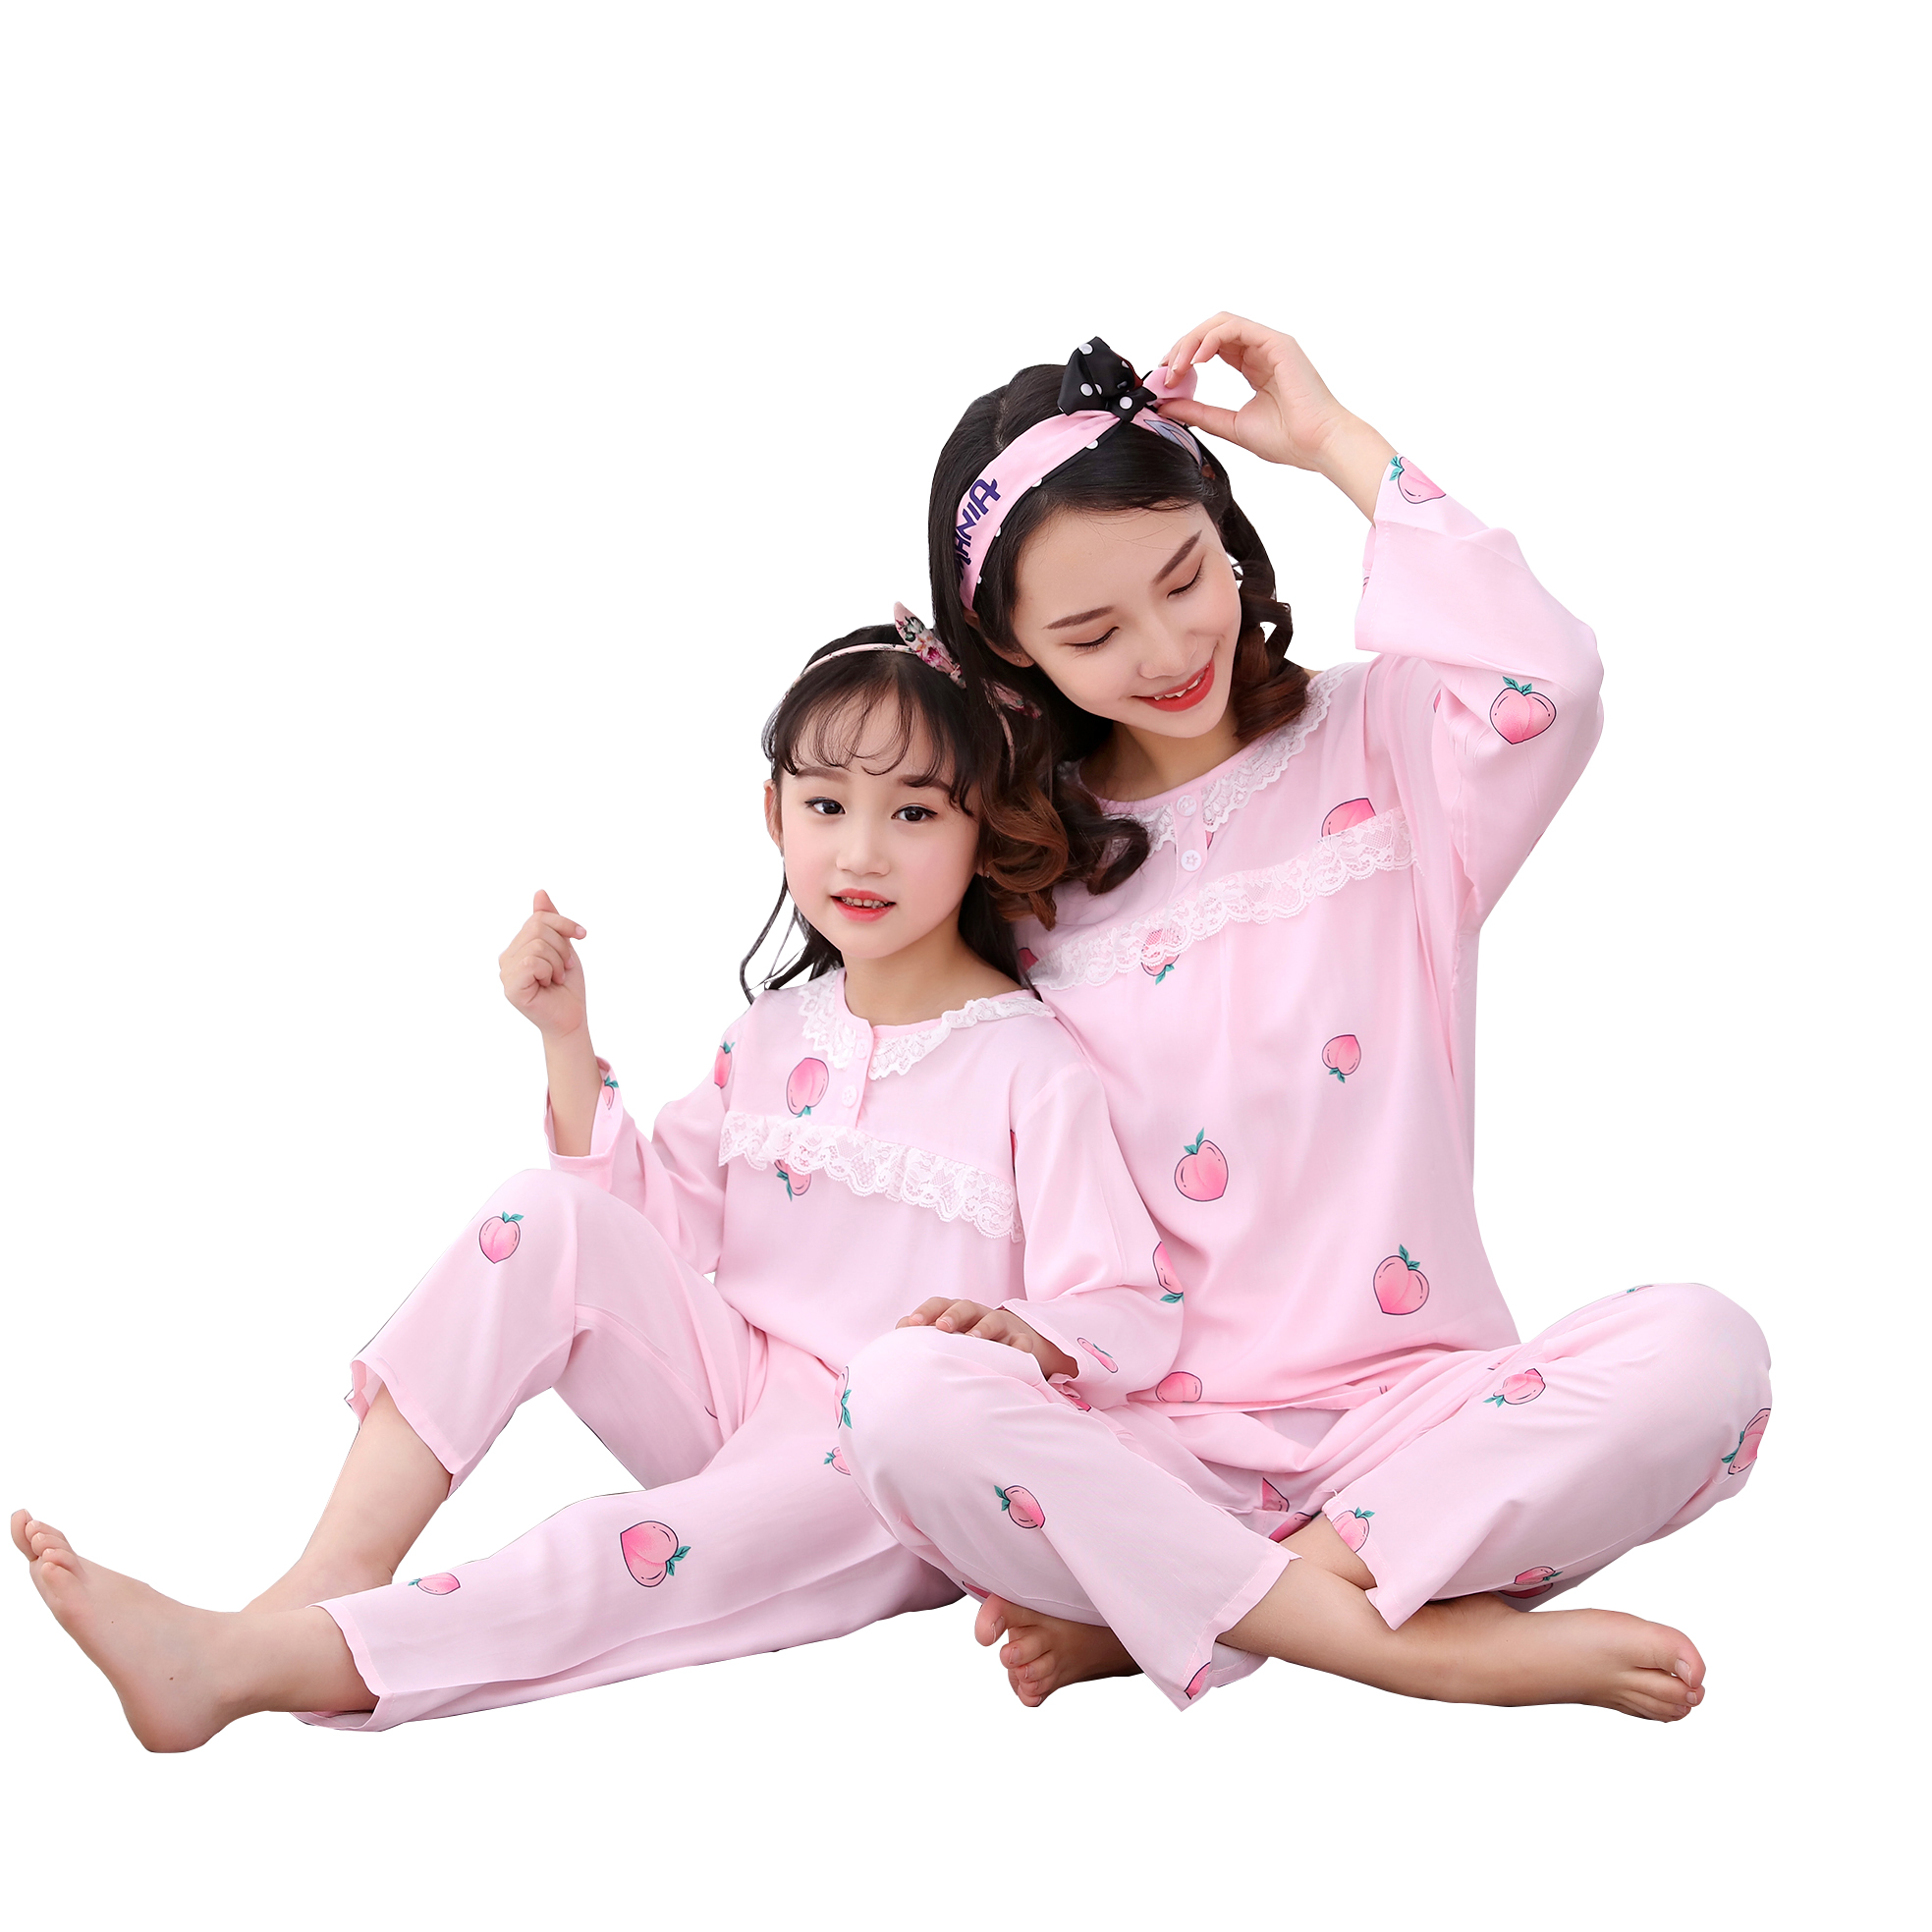 19新款春秋棉绸儿童睡衣套装女 童装中小童印花小孩家居服亲子装